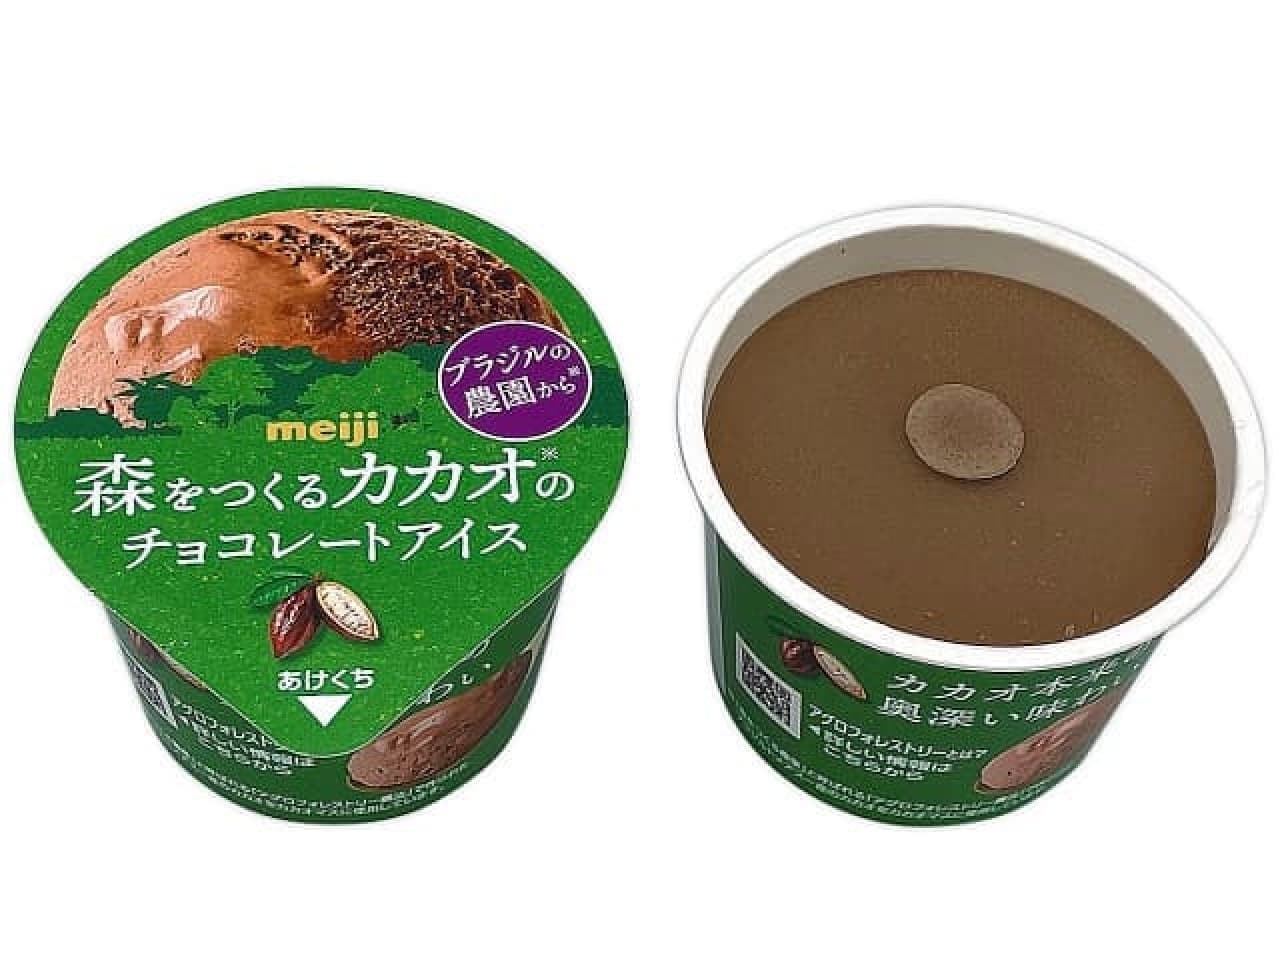 7-ELEVEN "Meiji Mori wo Tsukuru Cacao no Choco Ice Cream